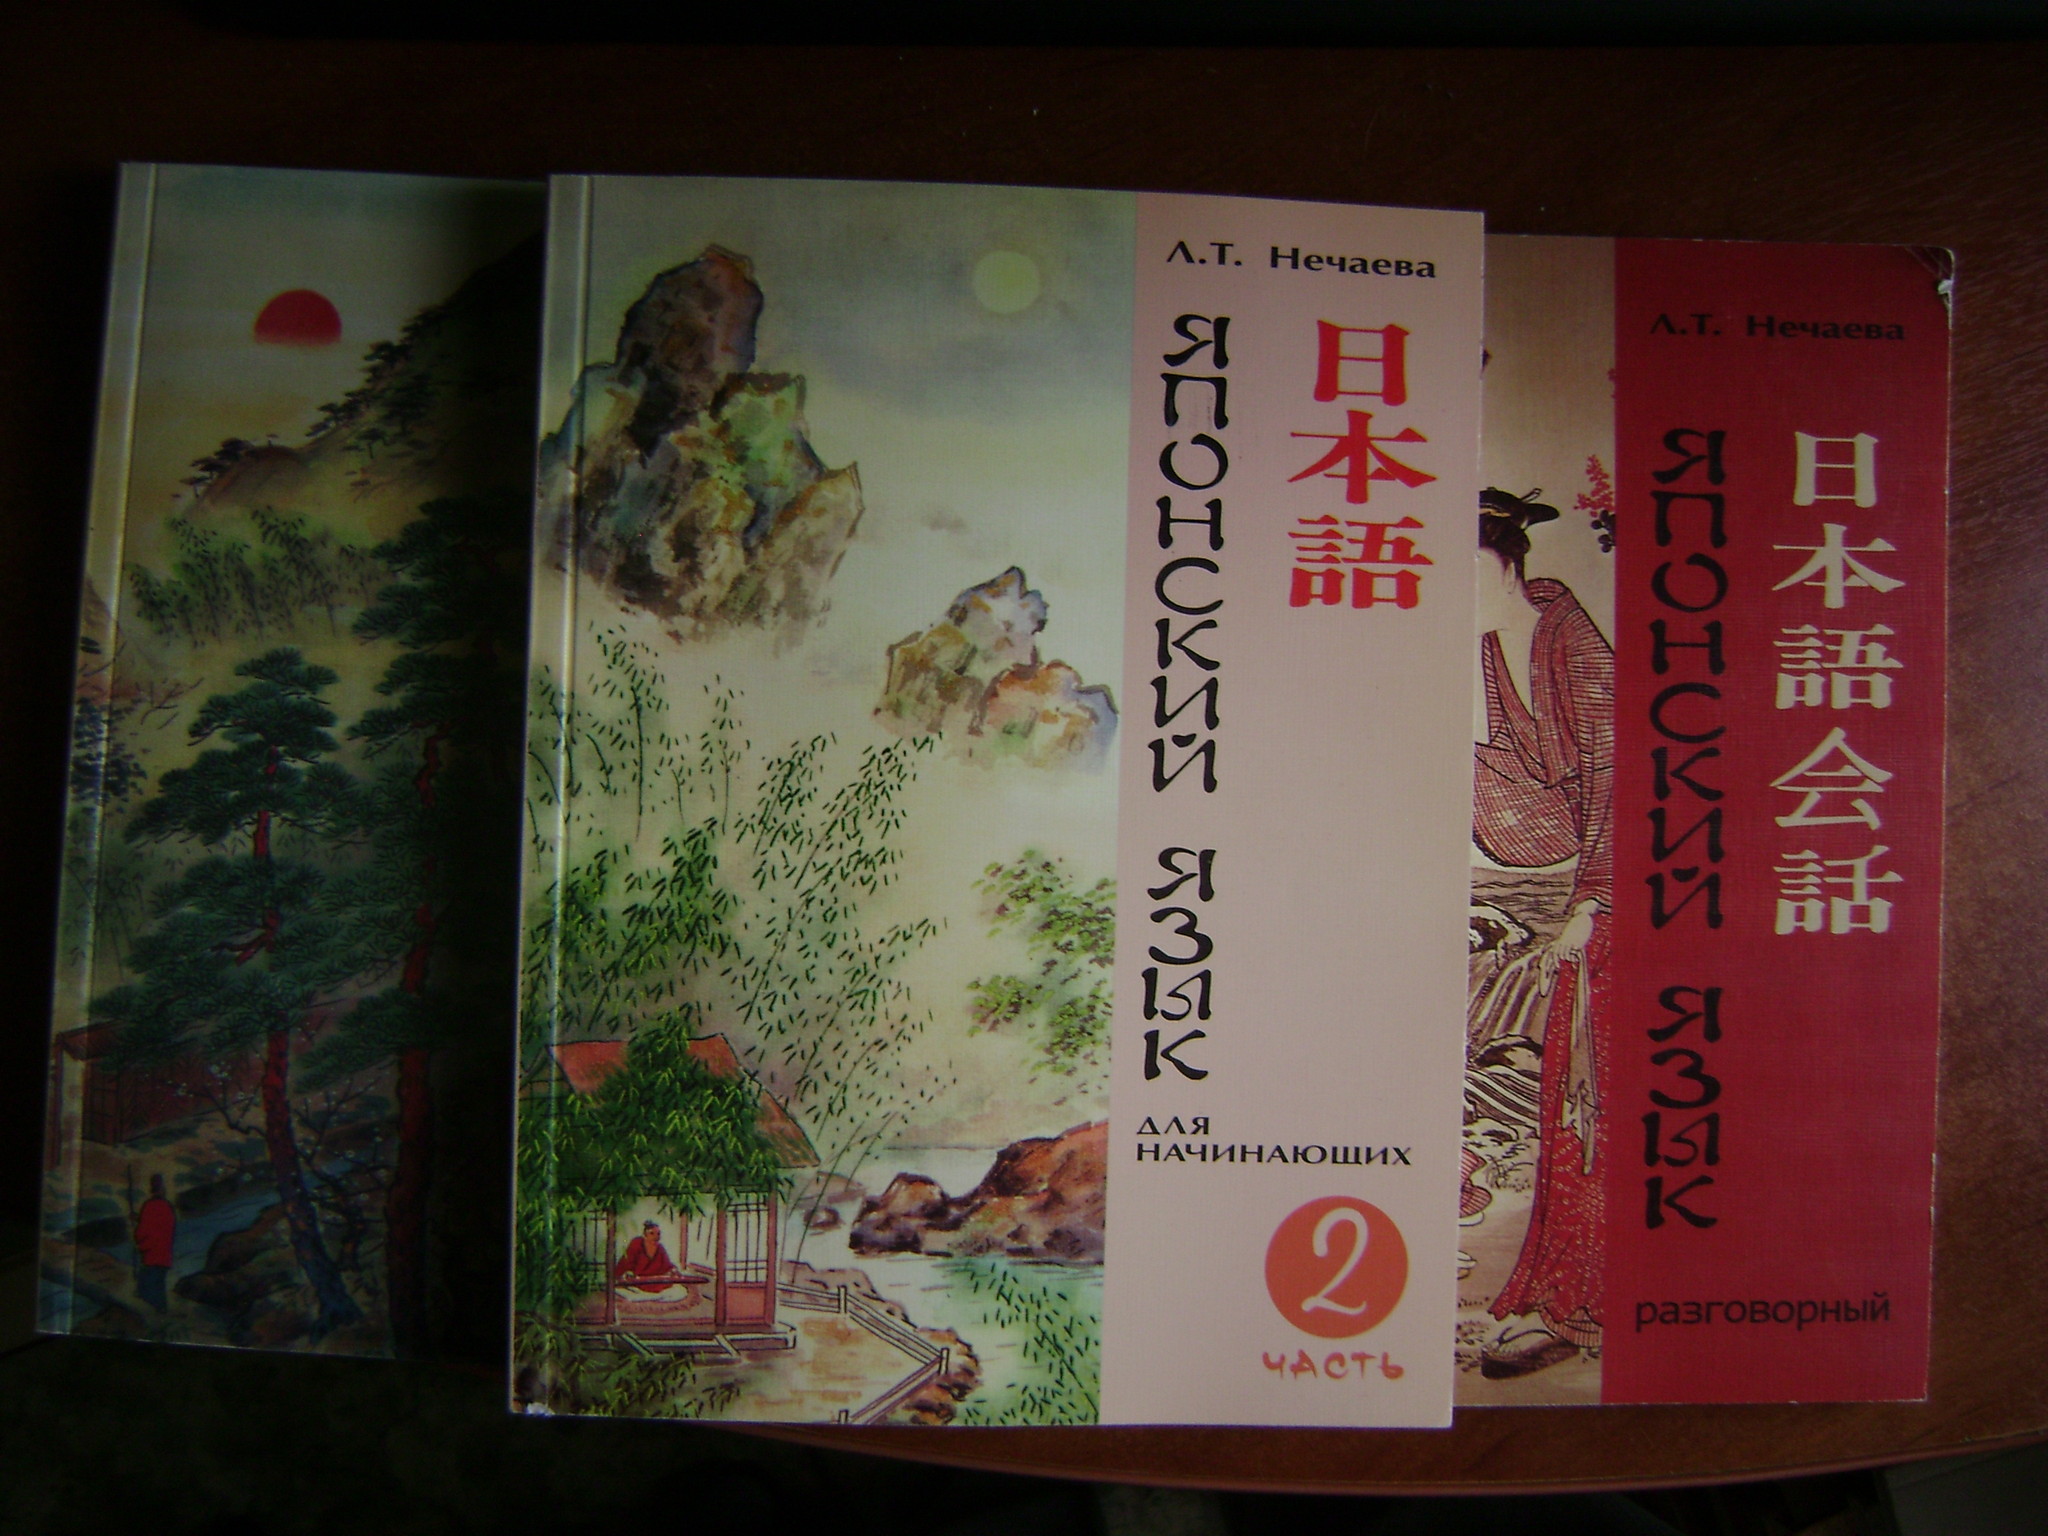 Нечаева Л.Т. Японский язык. Для начинающих в двух книгах + Учебник разговорного японского языка